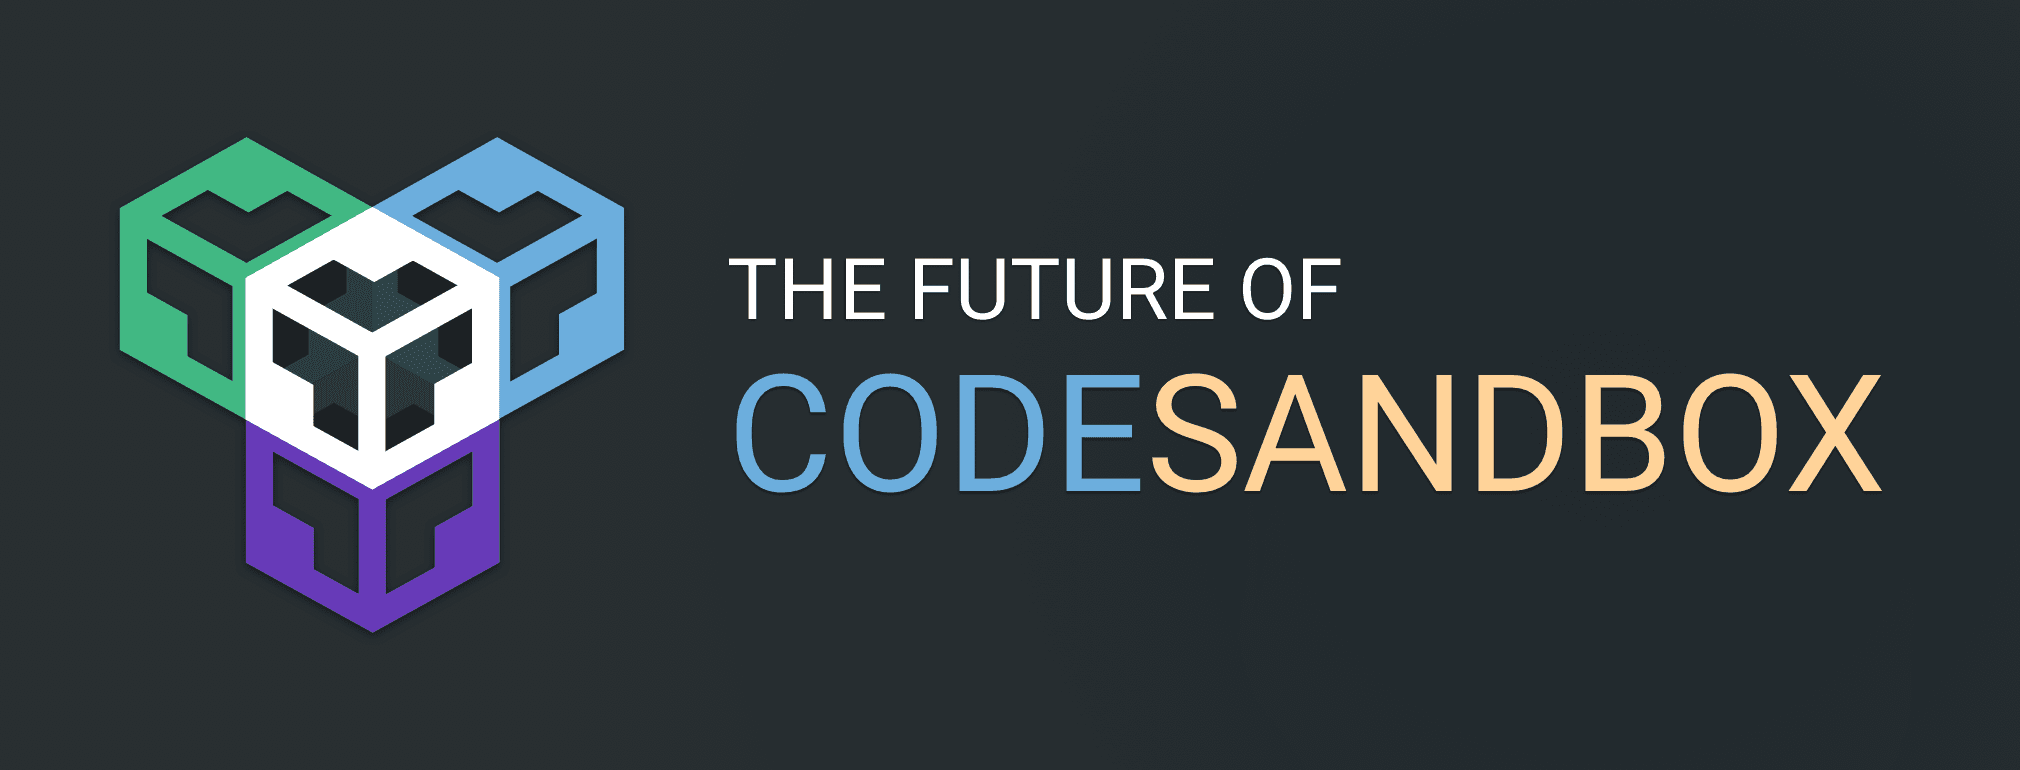 The Future of CodeSandbox